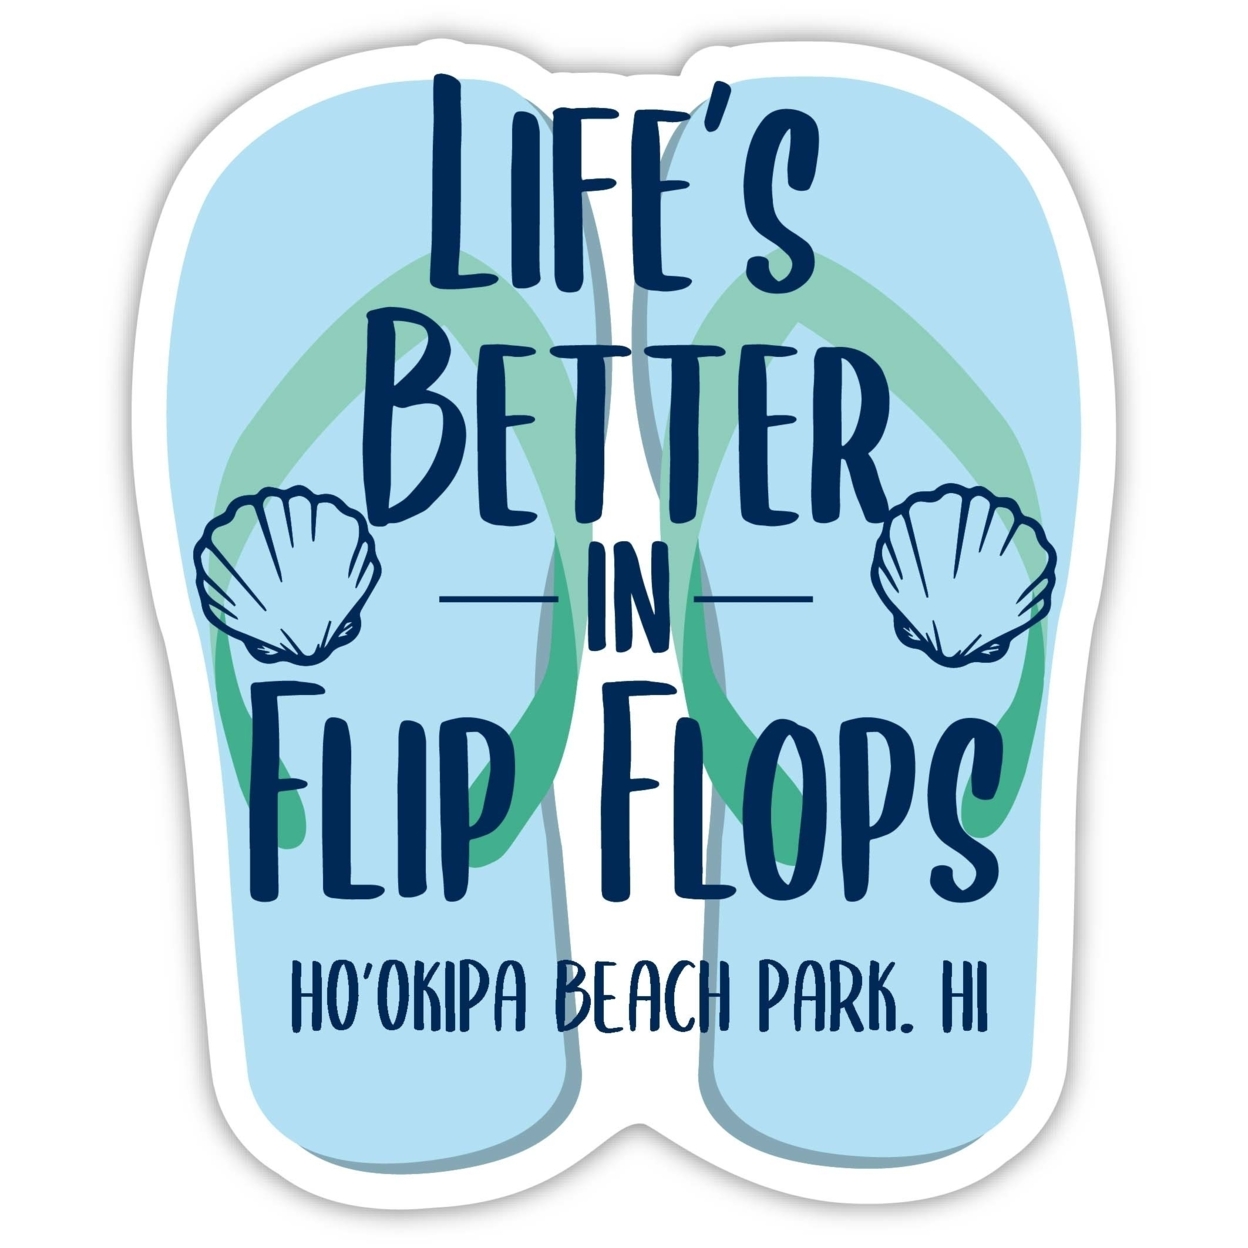 Ho'Okipa Beach Park Hawaii Souvenir 4 Inch Vinyl Decal Sticker Flip Flop Design